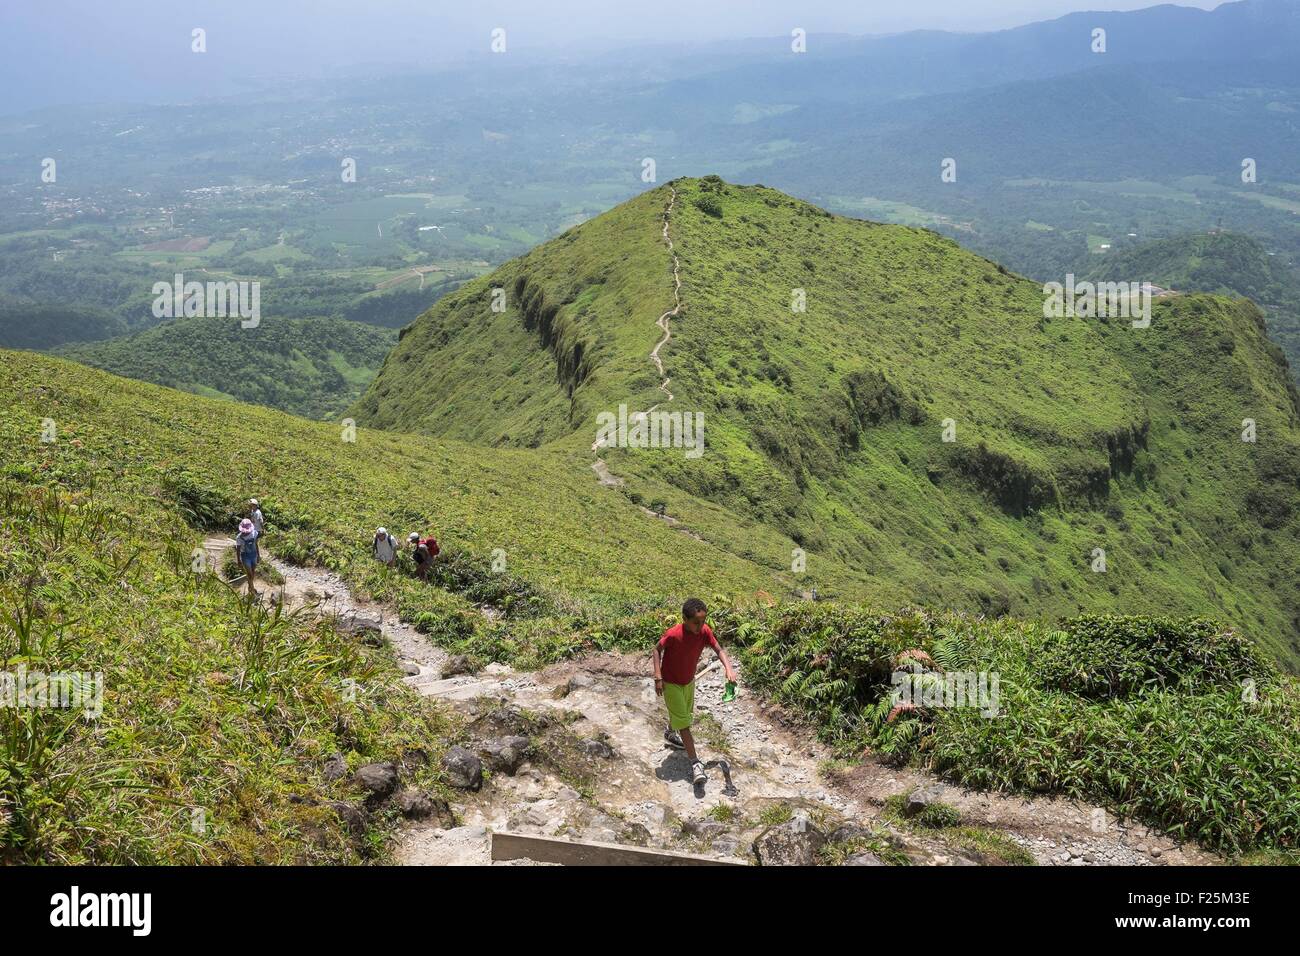 La France, la Martinique, La Montagne Pelée, volcan actif à l'extrémité nord de l'île, randonnées sur des sentiers bien entretenus Banque D'Images